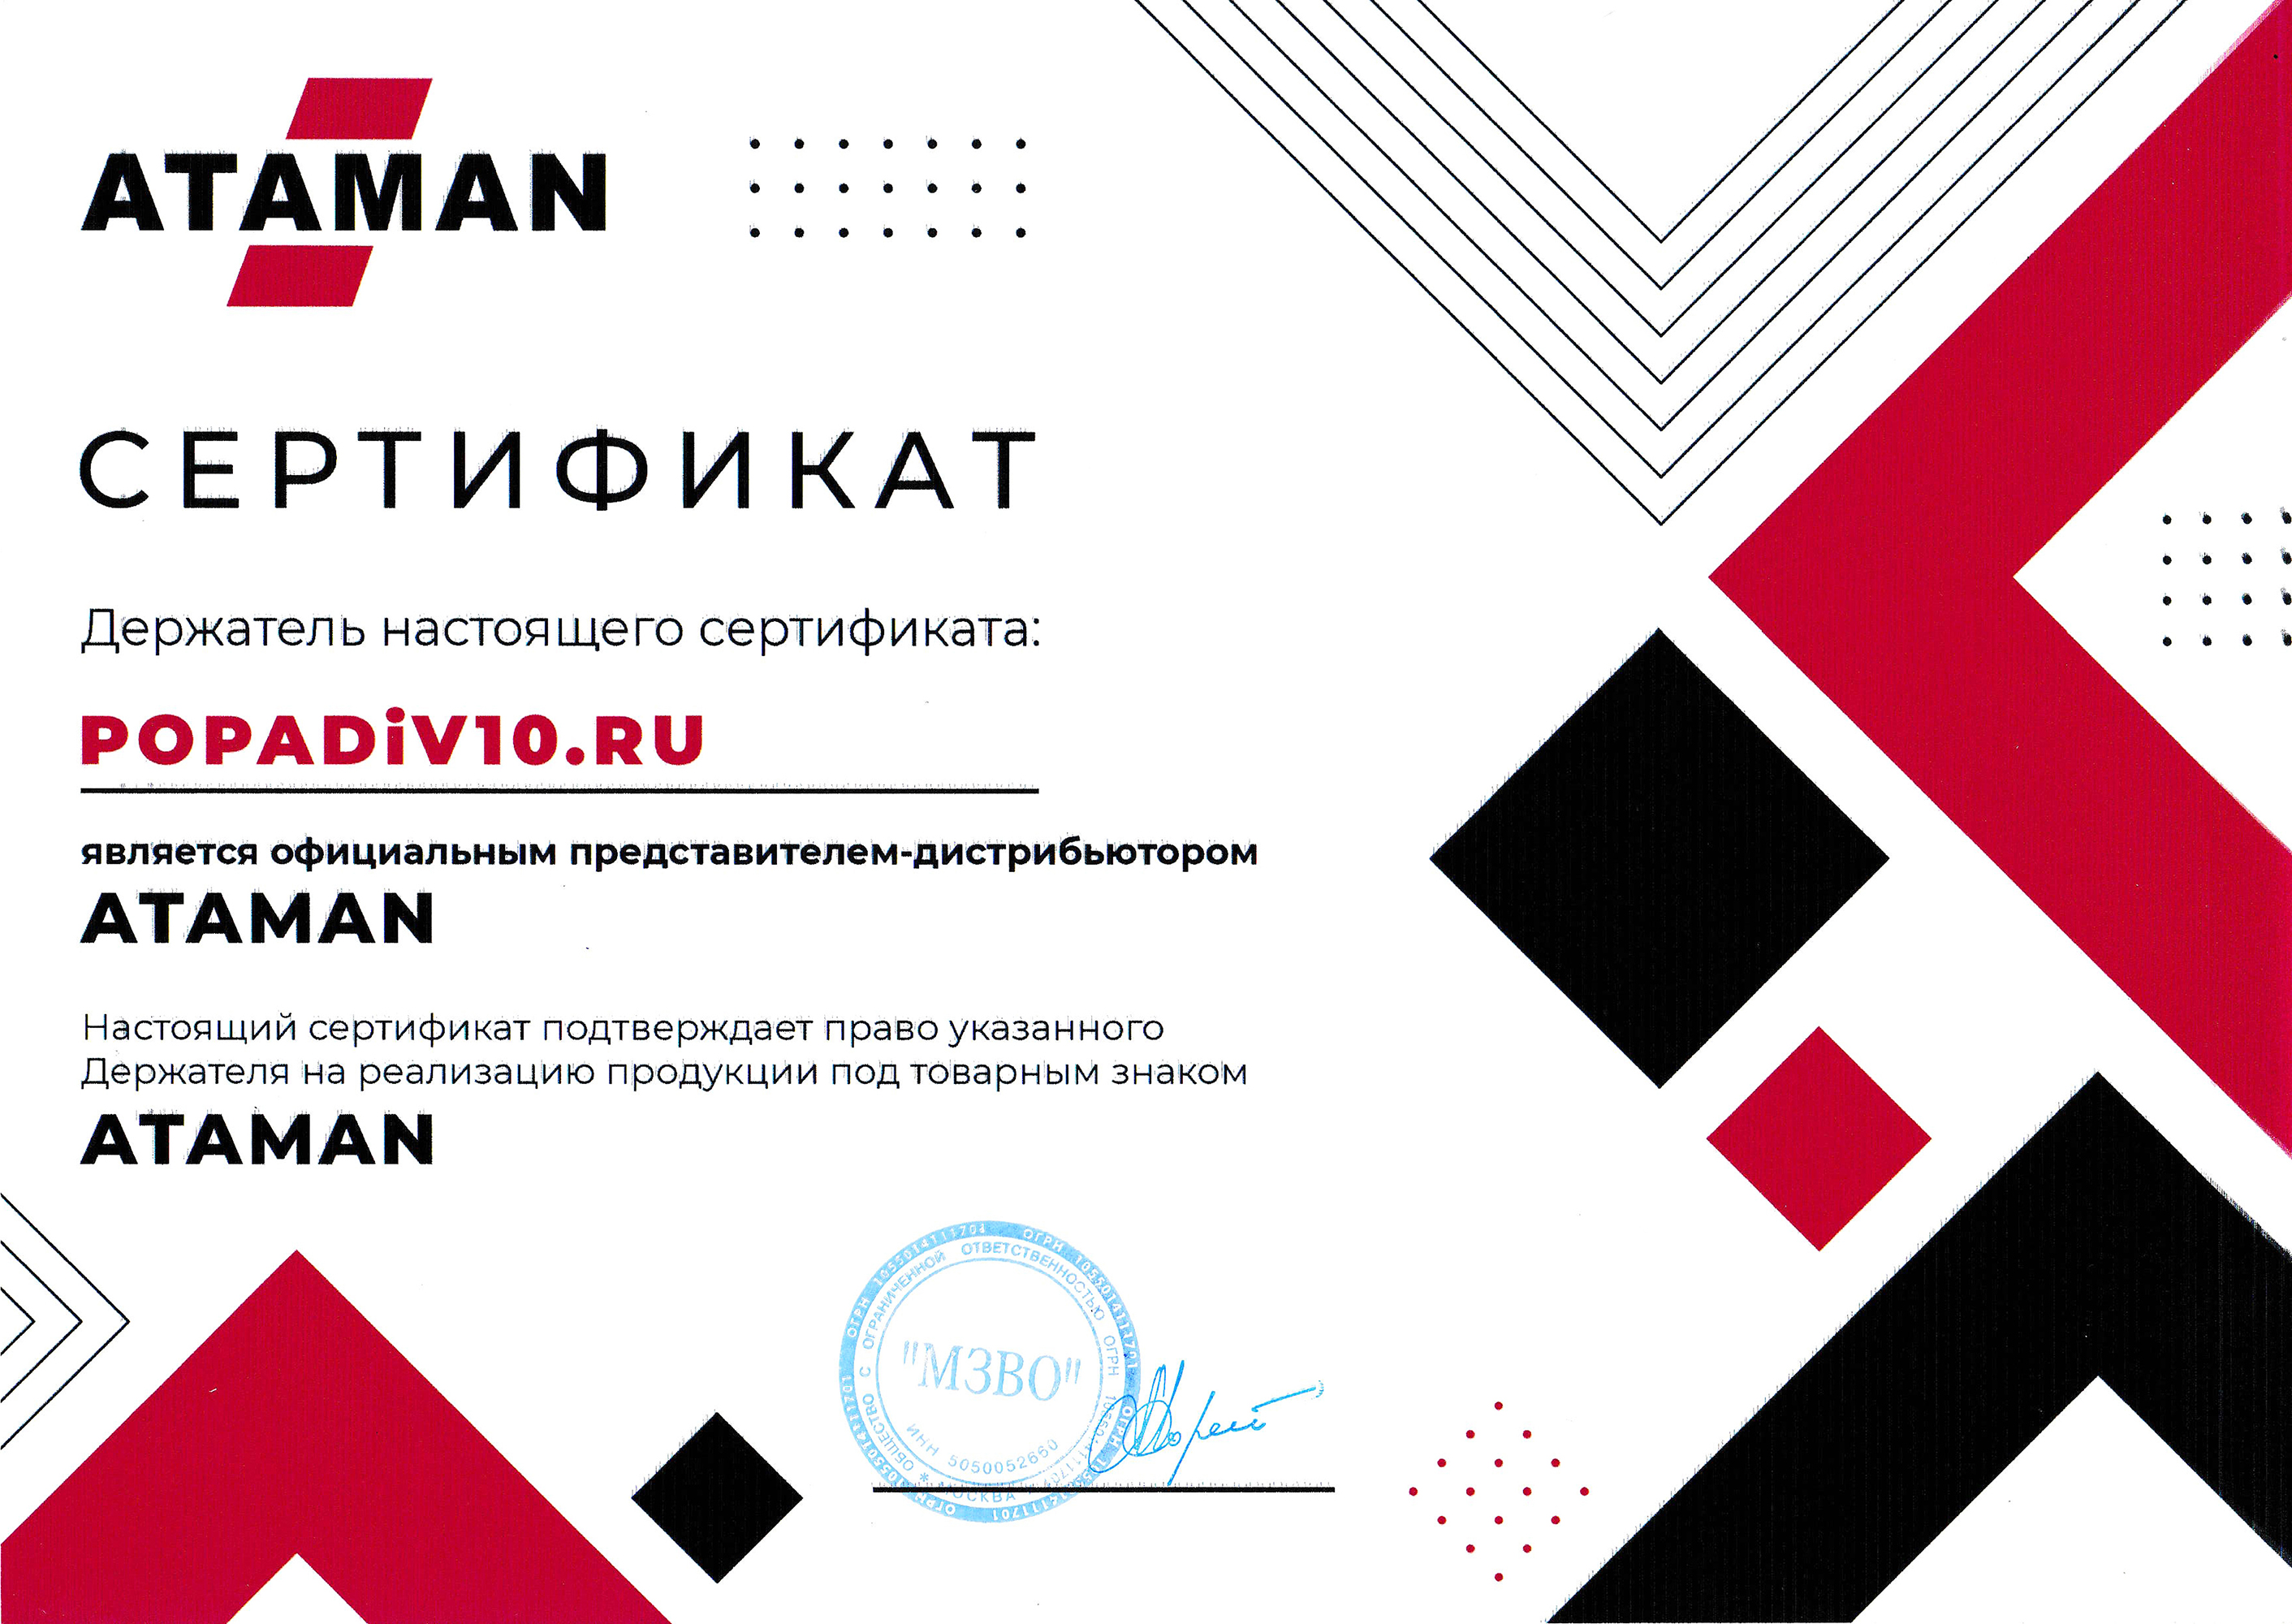 Ataman - официальный дилер Popadiv10